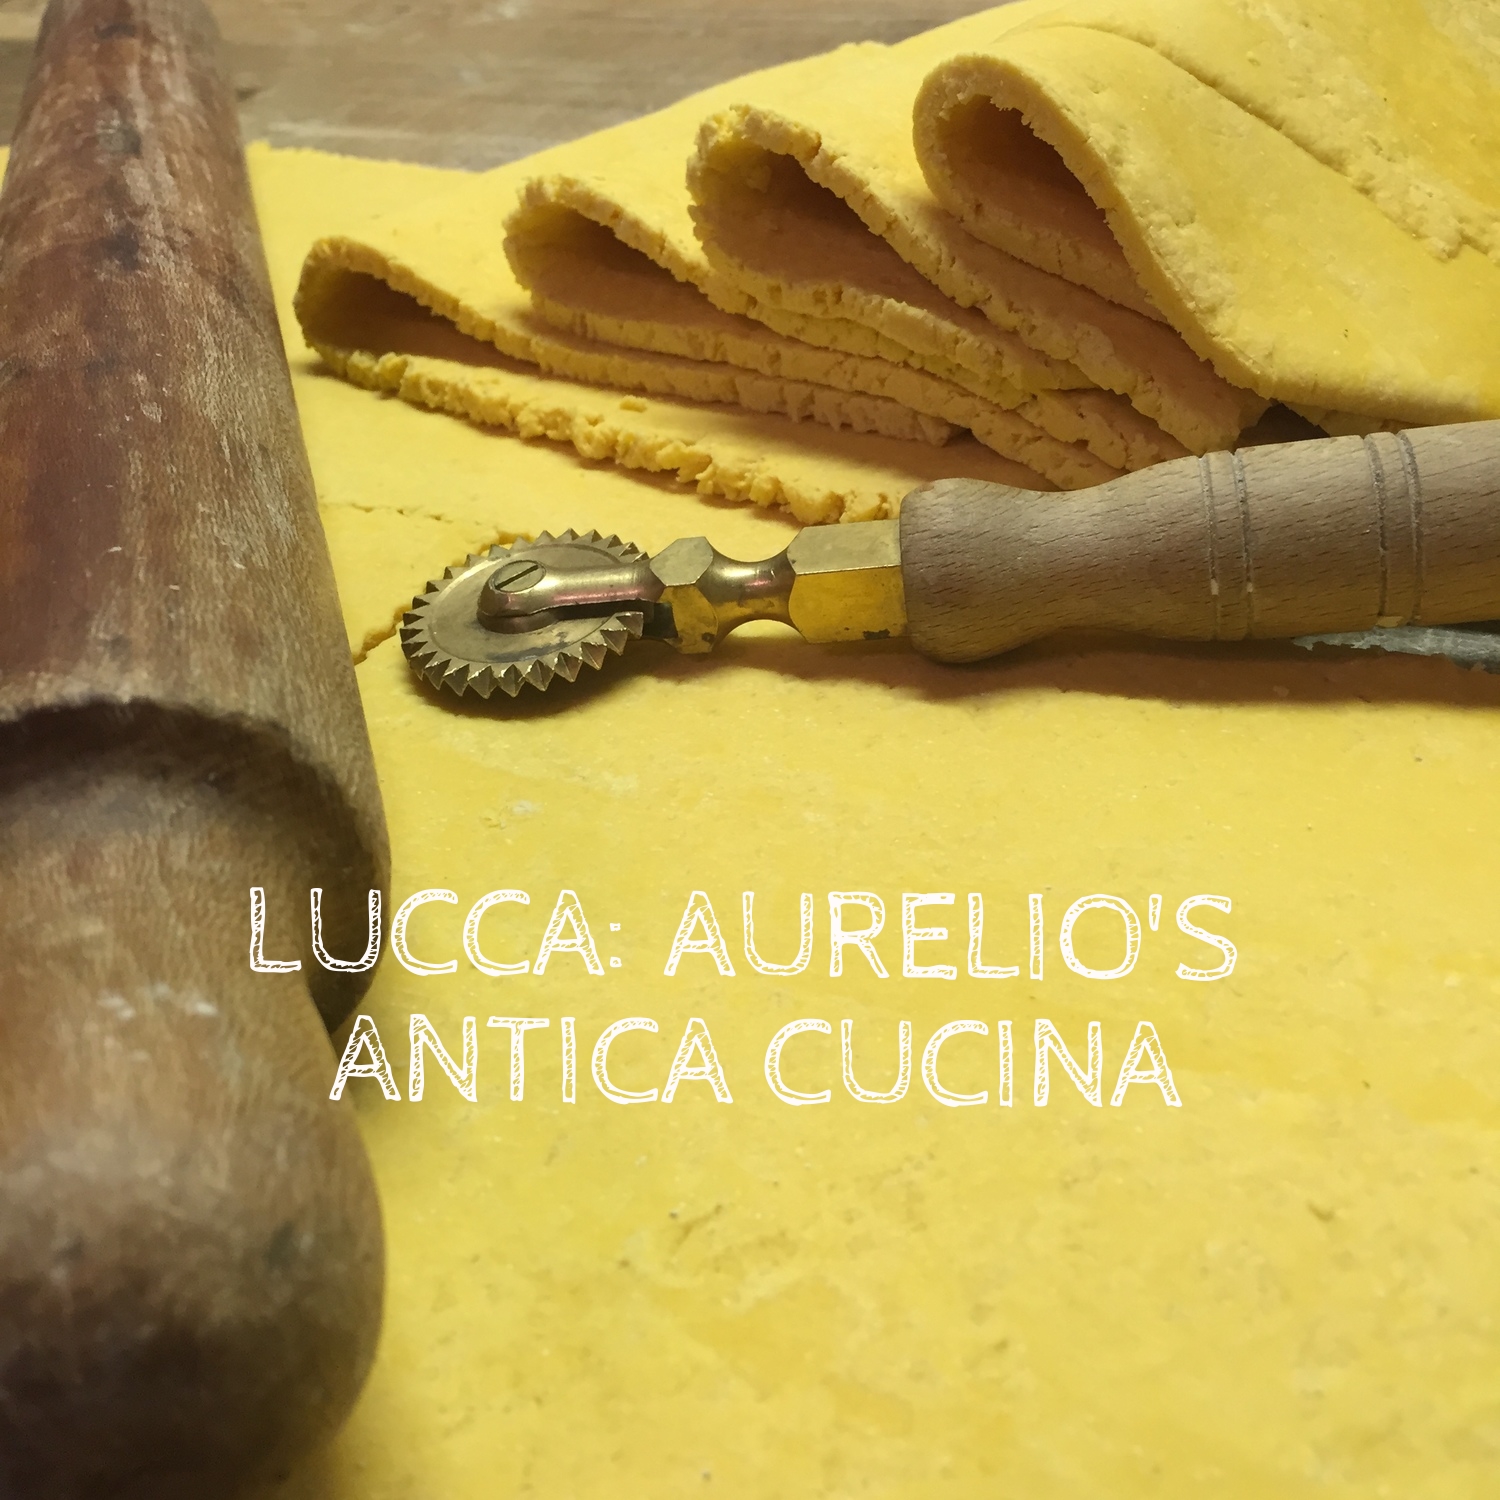 Lucca: Aurelio's Antica Cucina